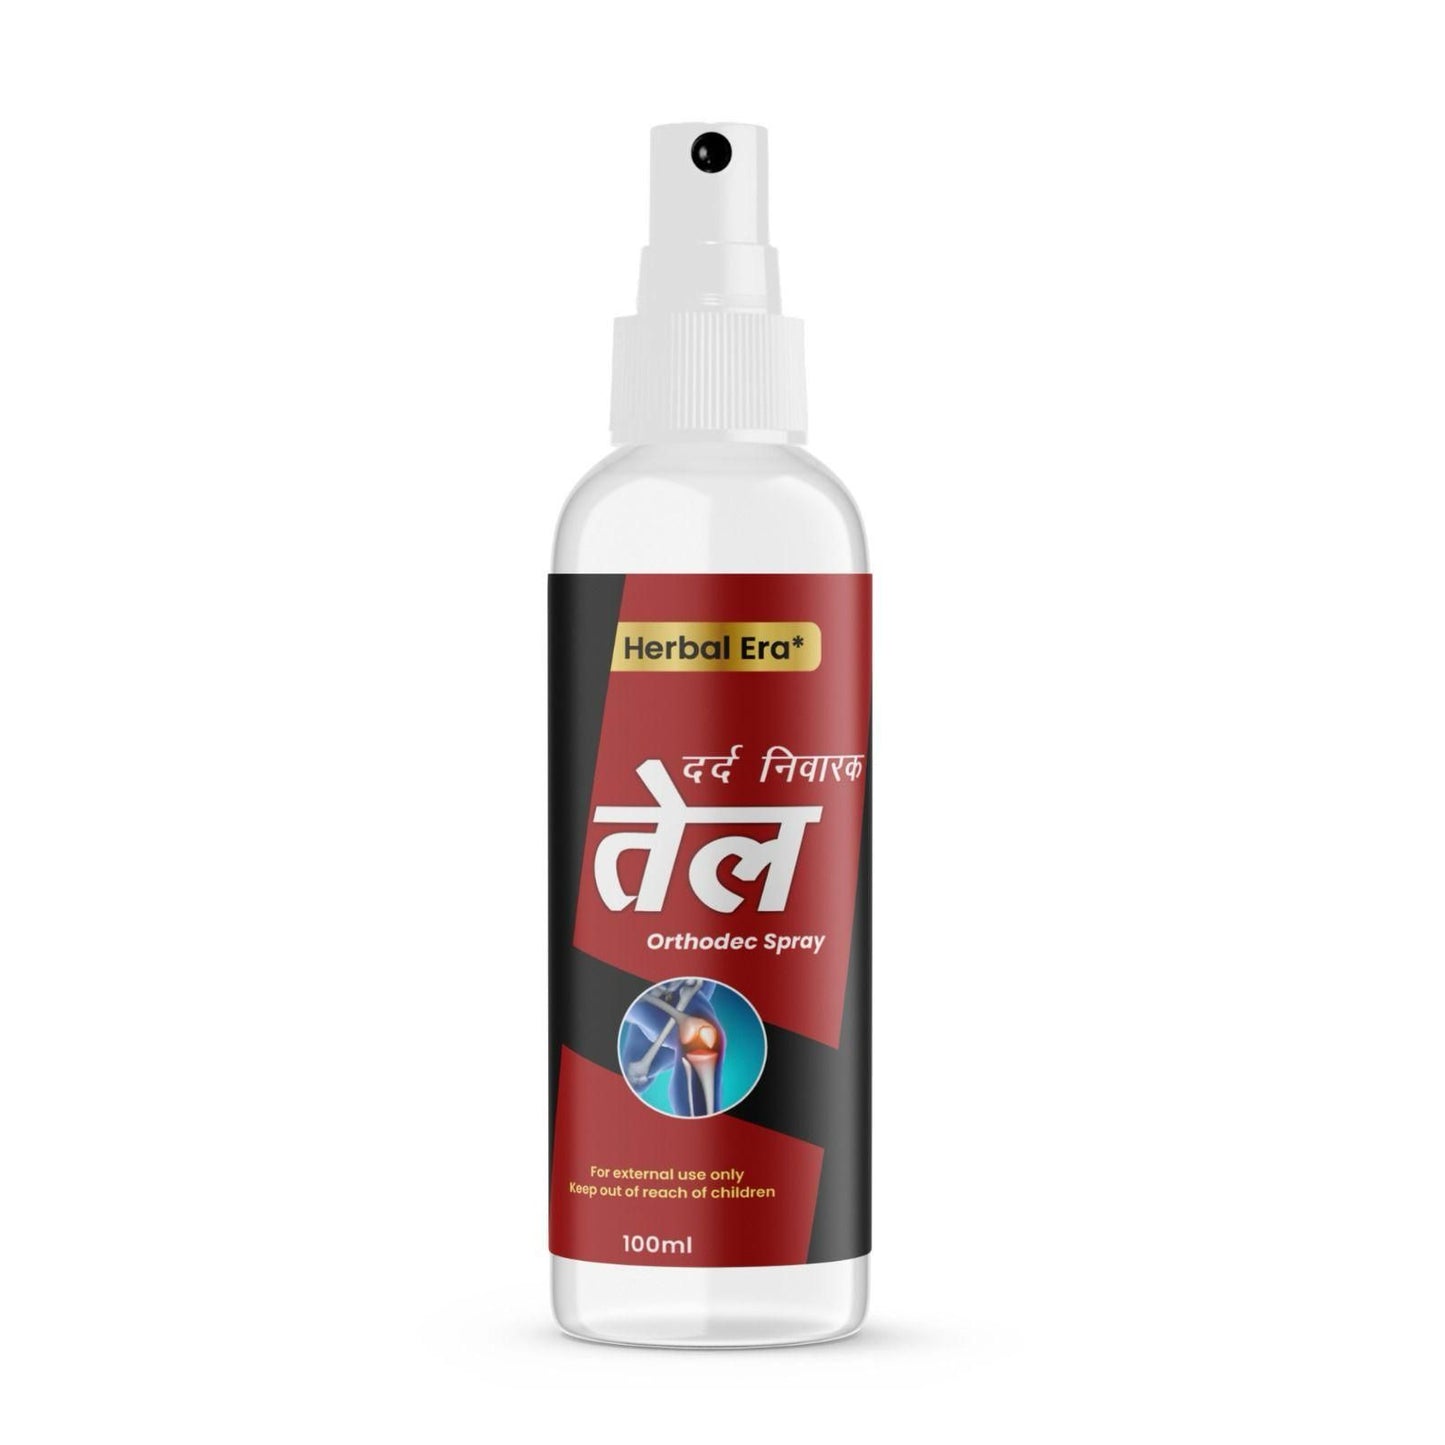 Herbal Era Dard Nivarak Spray Tel 100ml - Natural Pain Relief Formula Buy 1 Get 1 Free